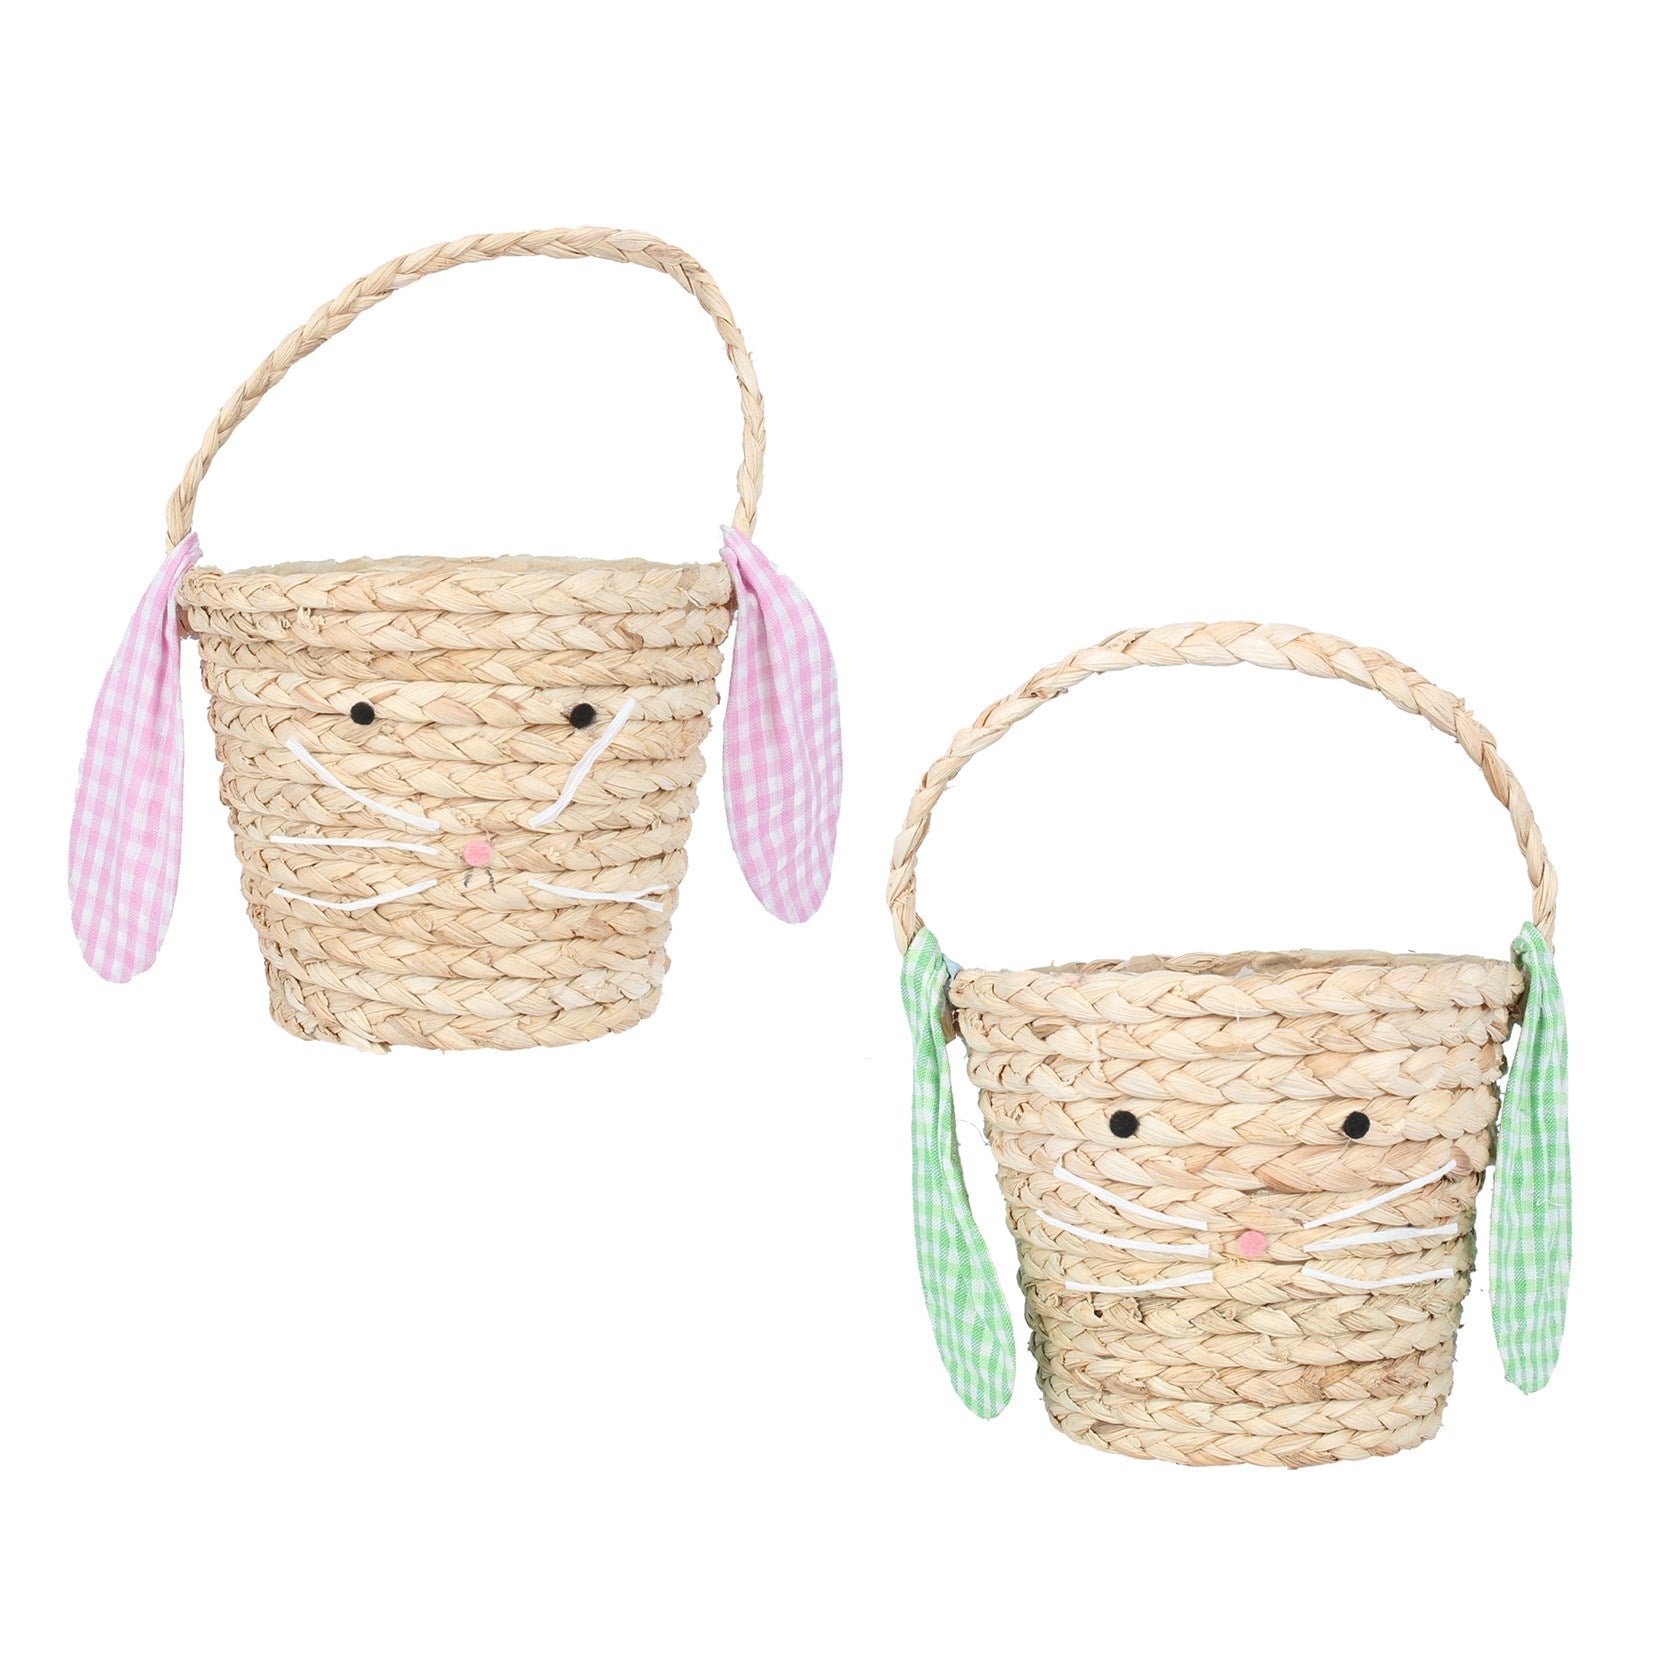 Straw Bunny Basket with Floppy Ears